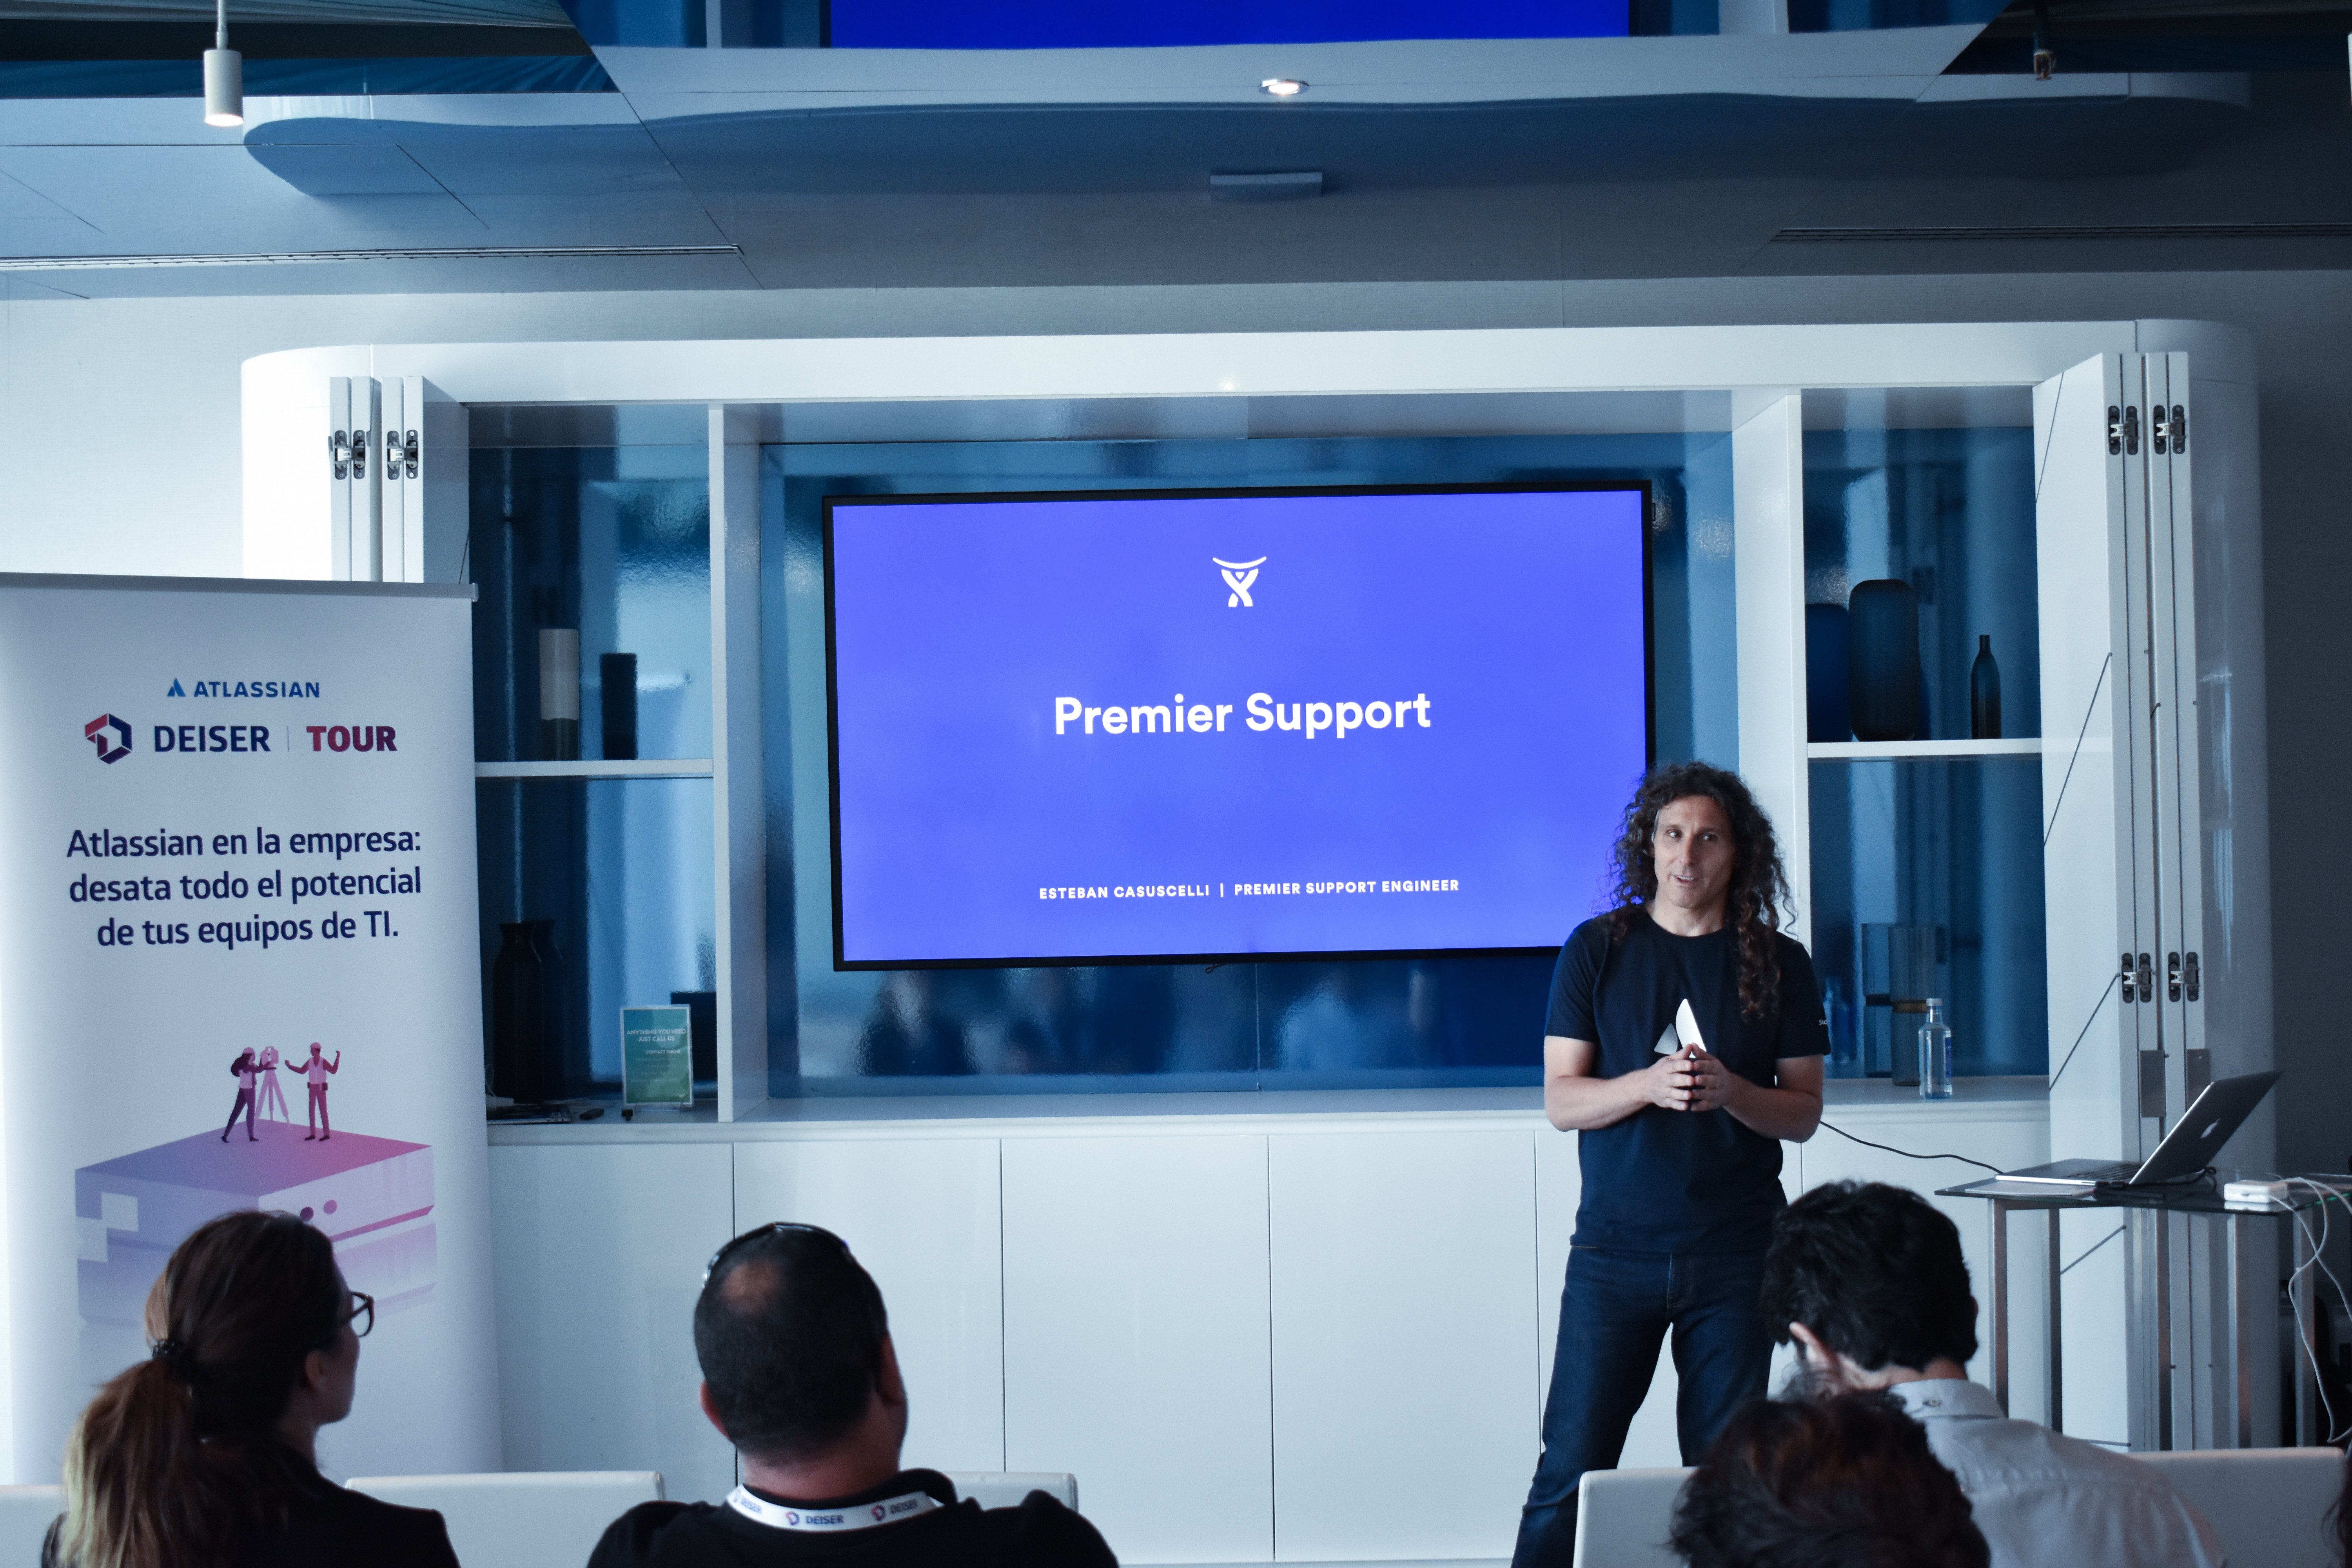 Una de las ventajas del premier support de Atlassian es su alta disponibilidad para resolver cualquier inconveniente.